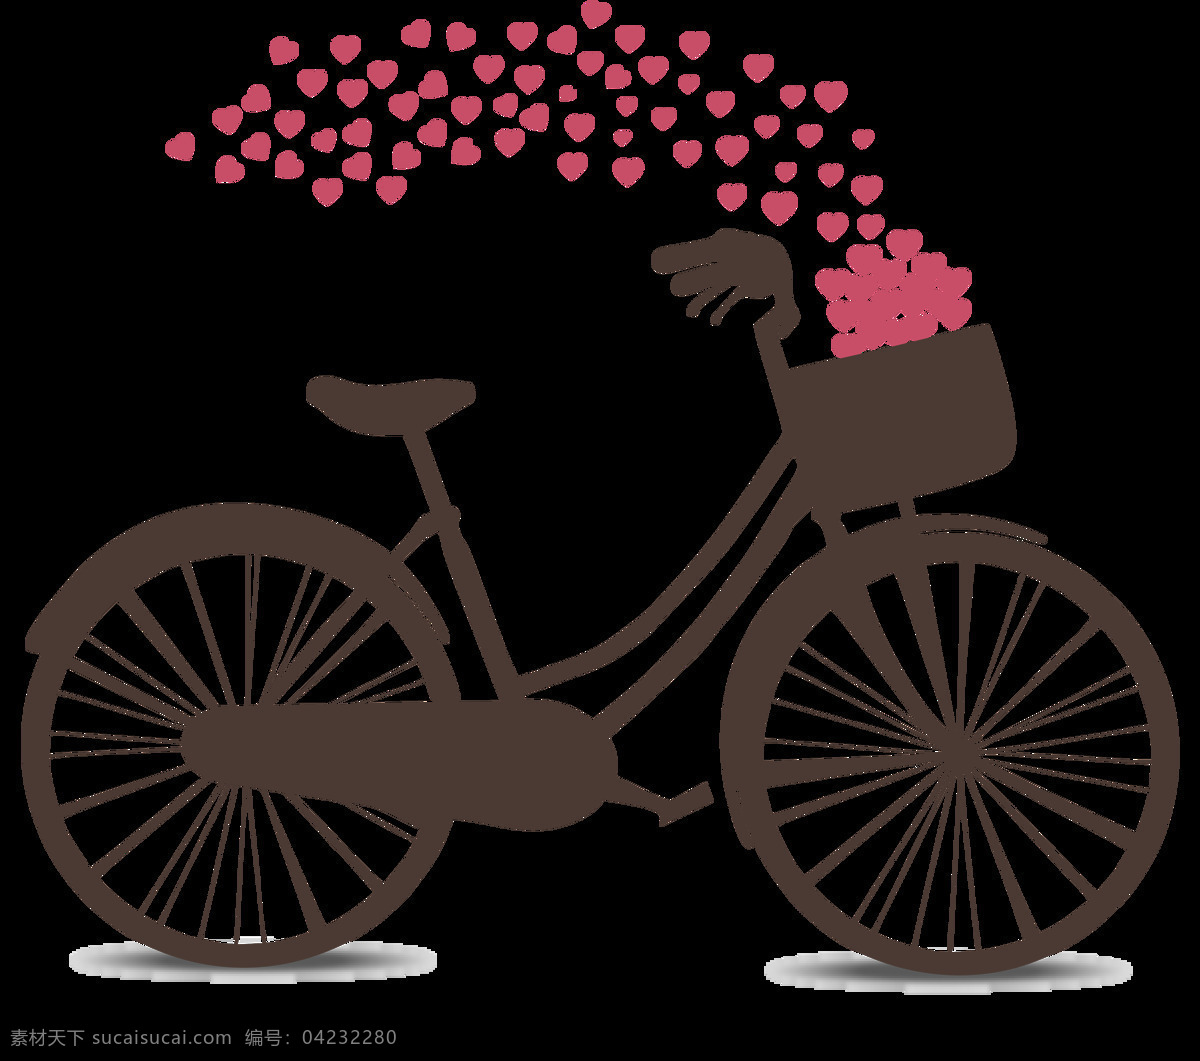 爱情 主题 自行车 剪影 免 抠 透明 图 层 共享单车 女式单车 男式单车 电动车 绿色低碳 绿色环保 环保电动车 健身单车 摩拜 ofo单车 小蓝单车 双人单车 多人单车